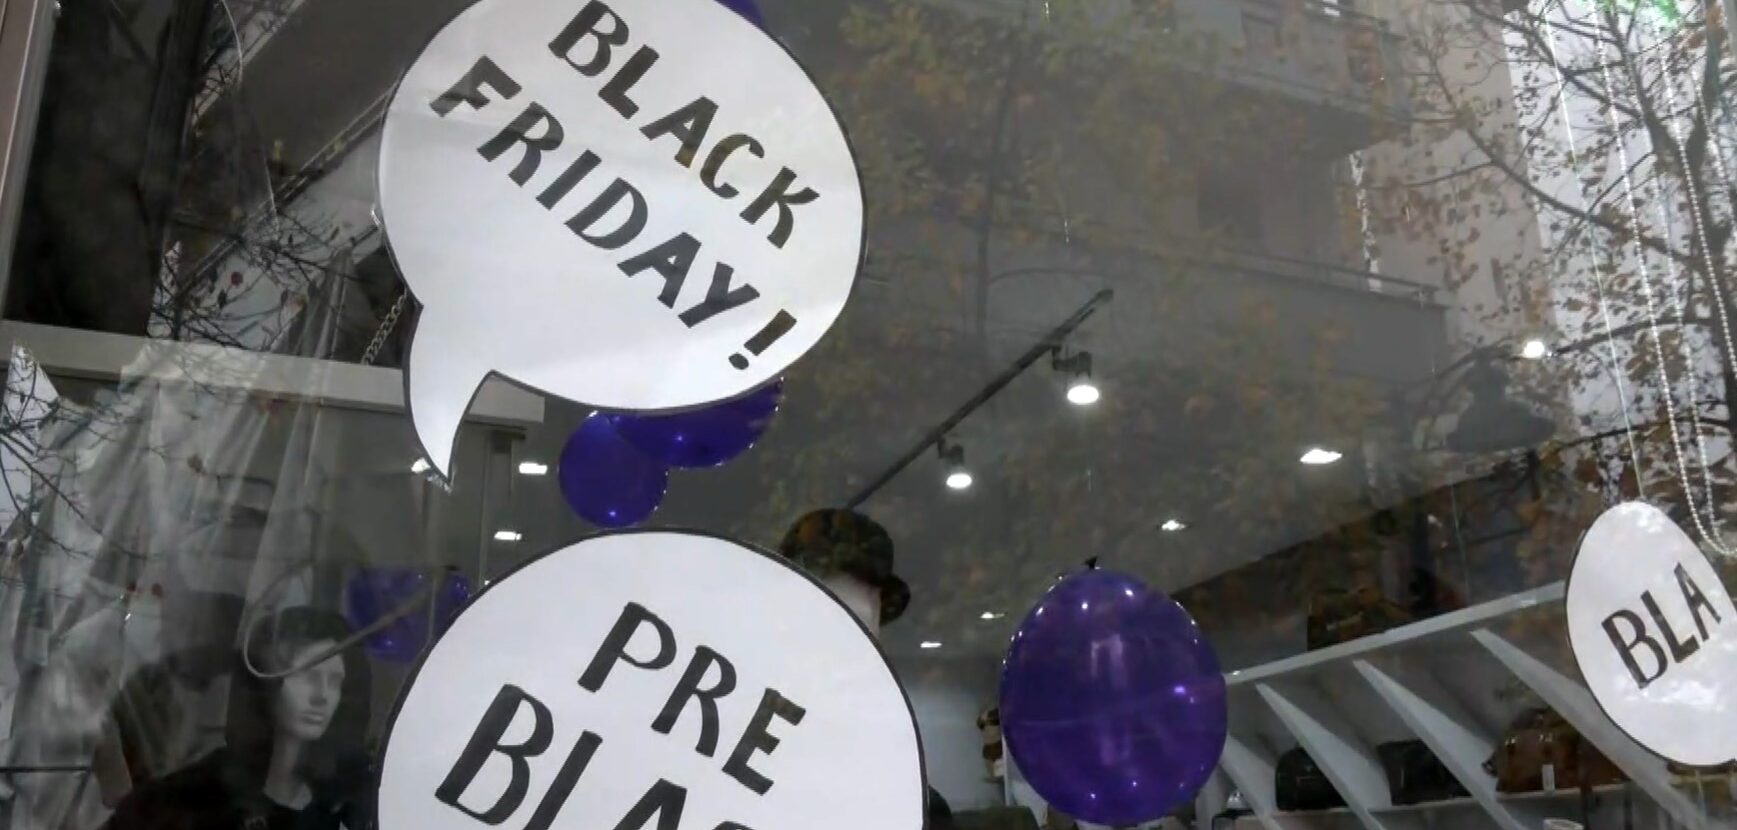 Black Friday: Θετικός ο απολογισμός για τους εμπόρους- Πώς κινήθηκε η αγορά στην Περιφέρεια